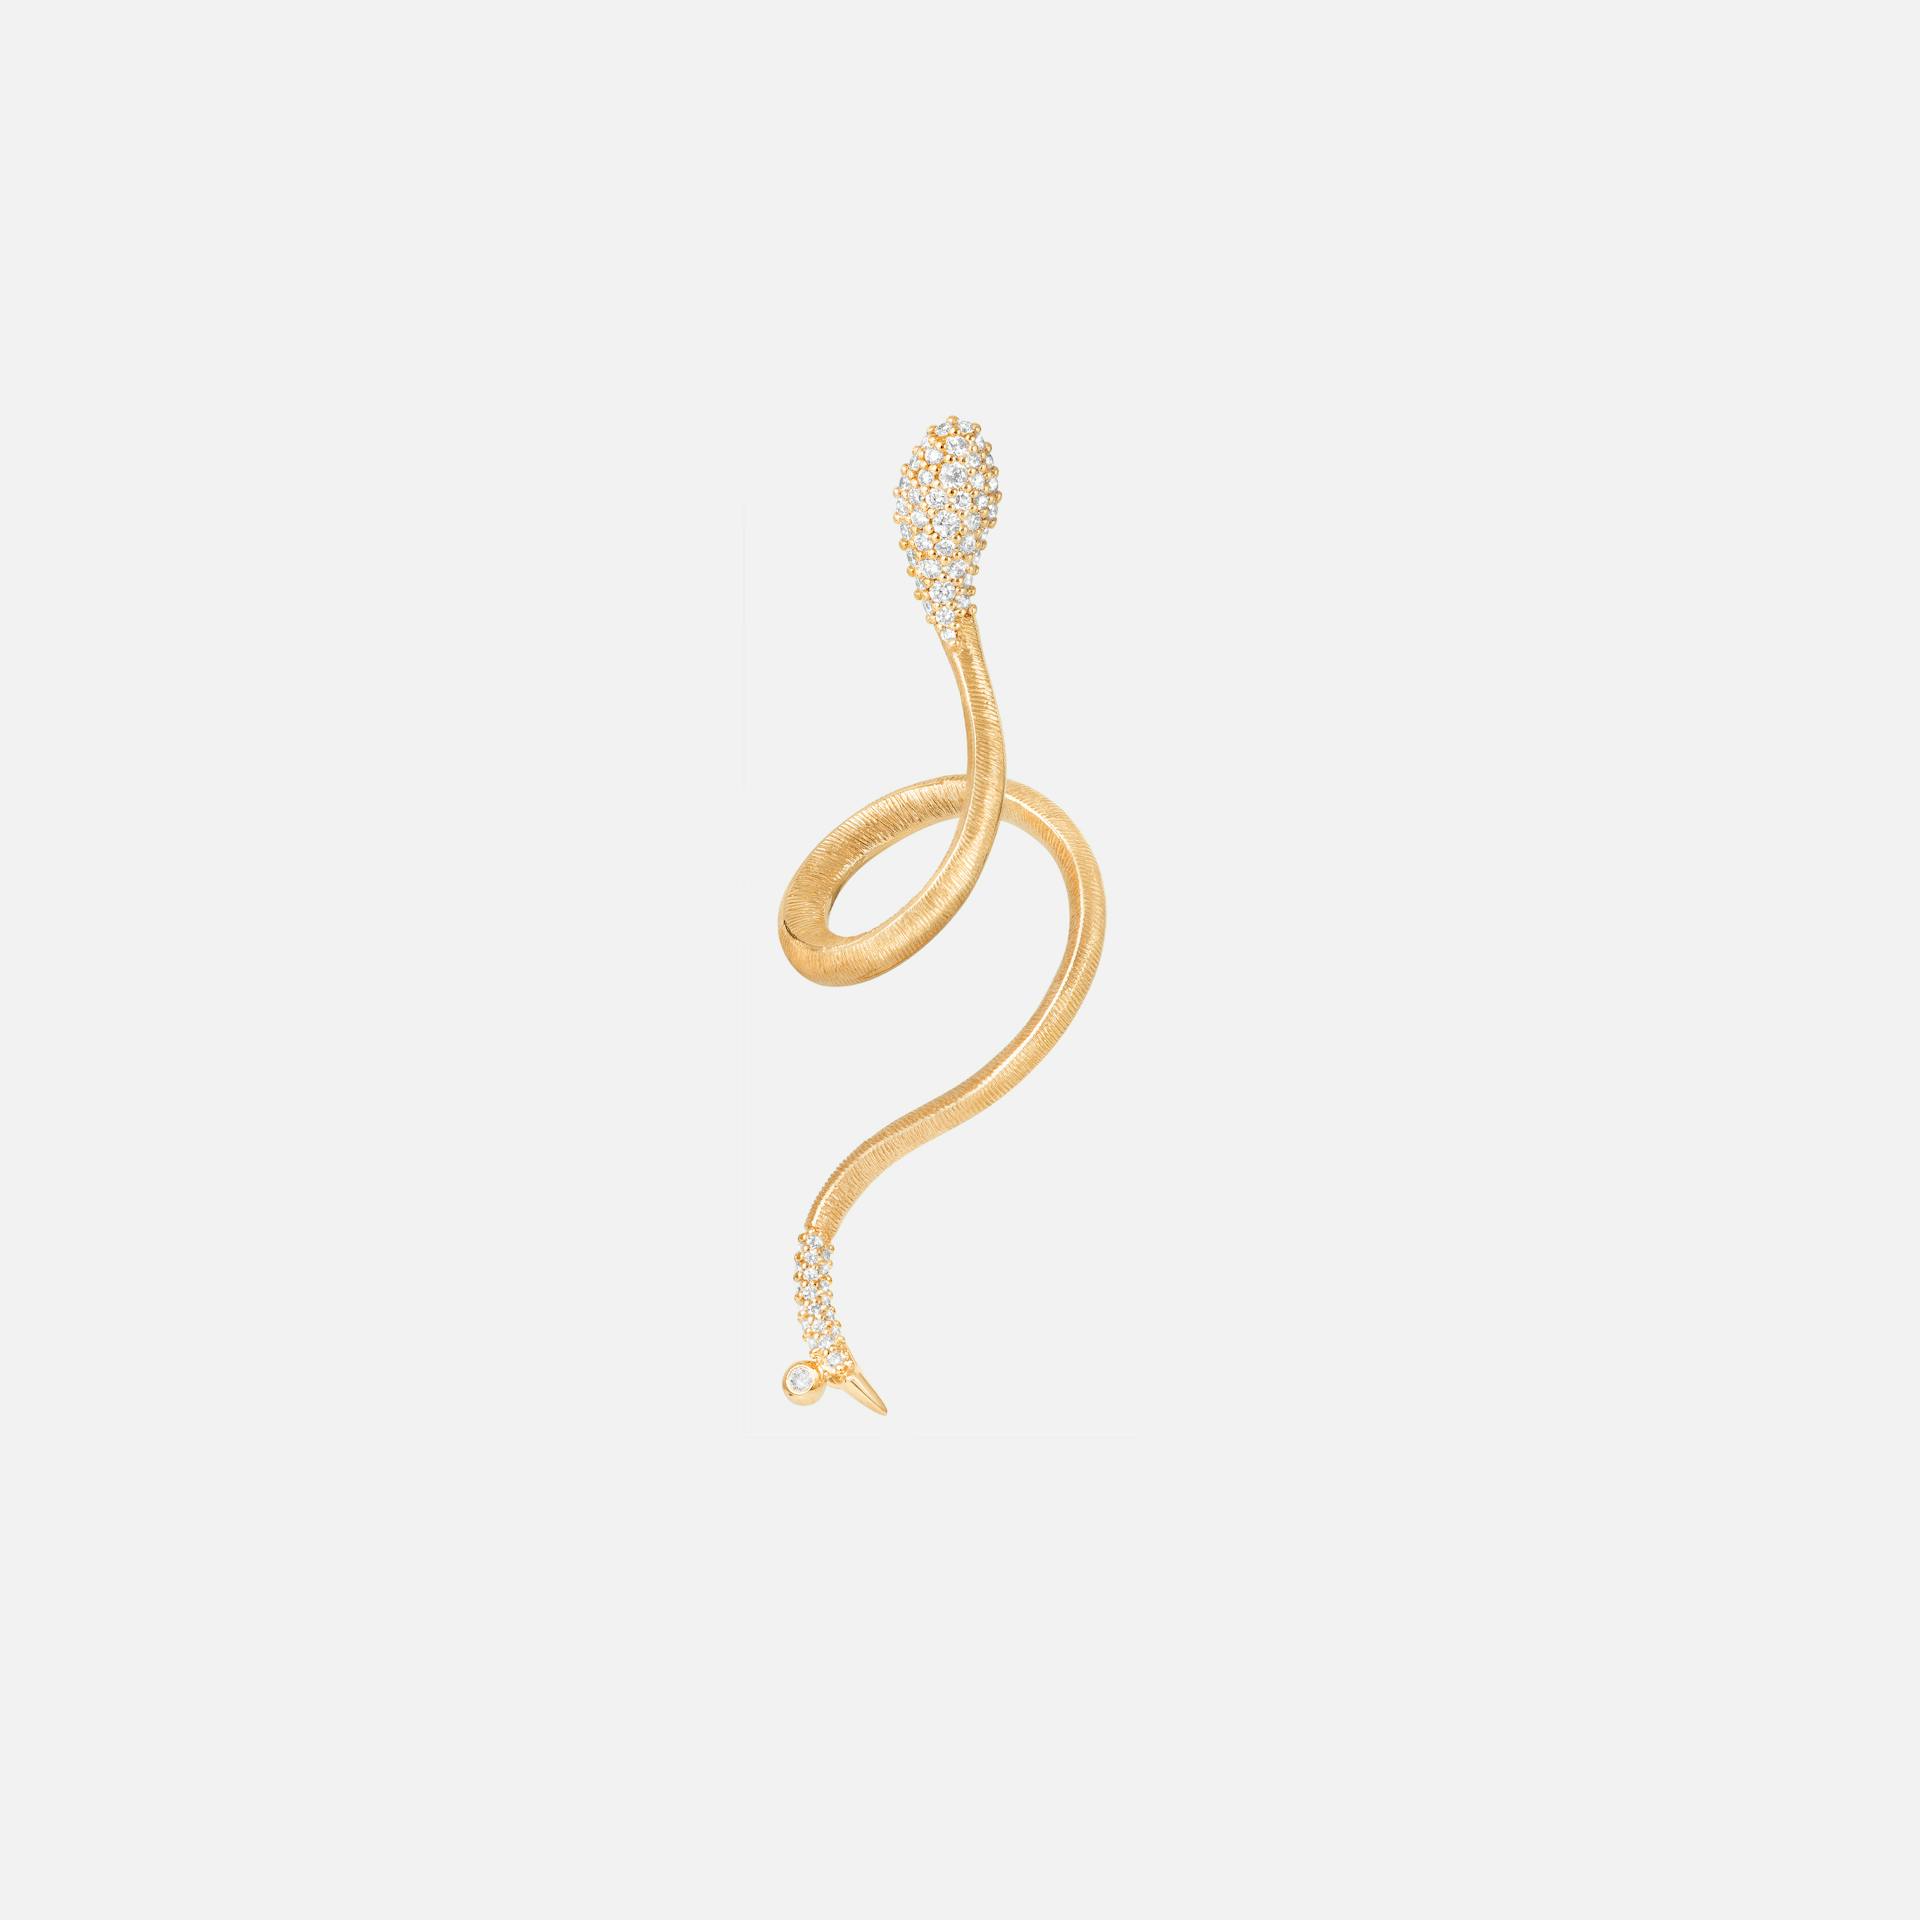 Snakes Earring in Gold with Pavé-set Diamonds  |  Ole Lynggaard Copenhagen 